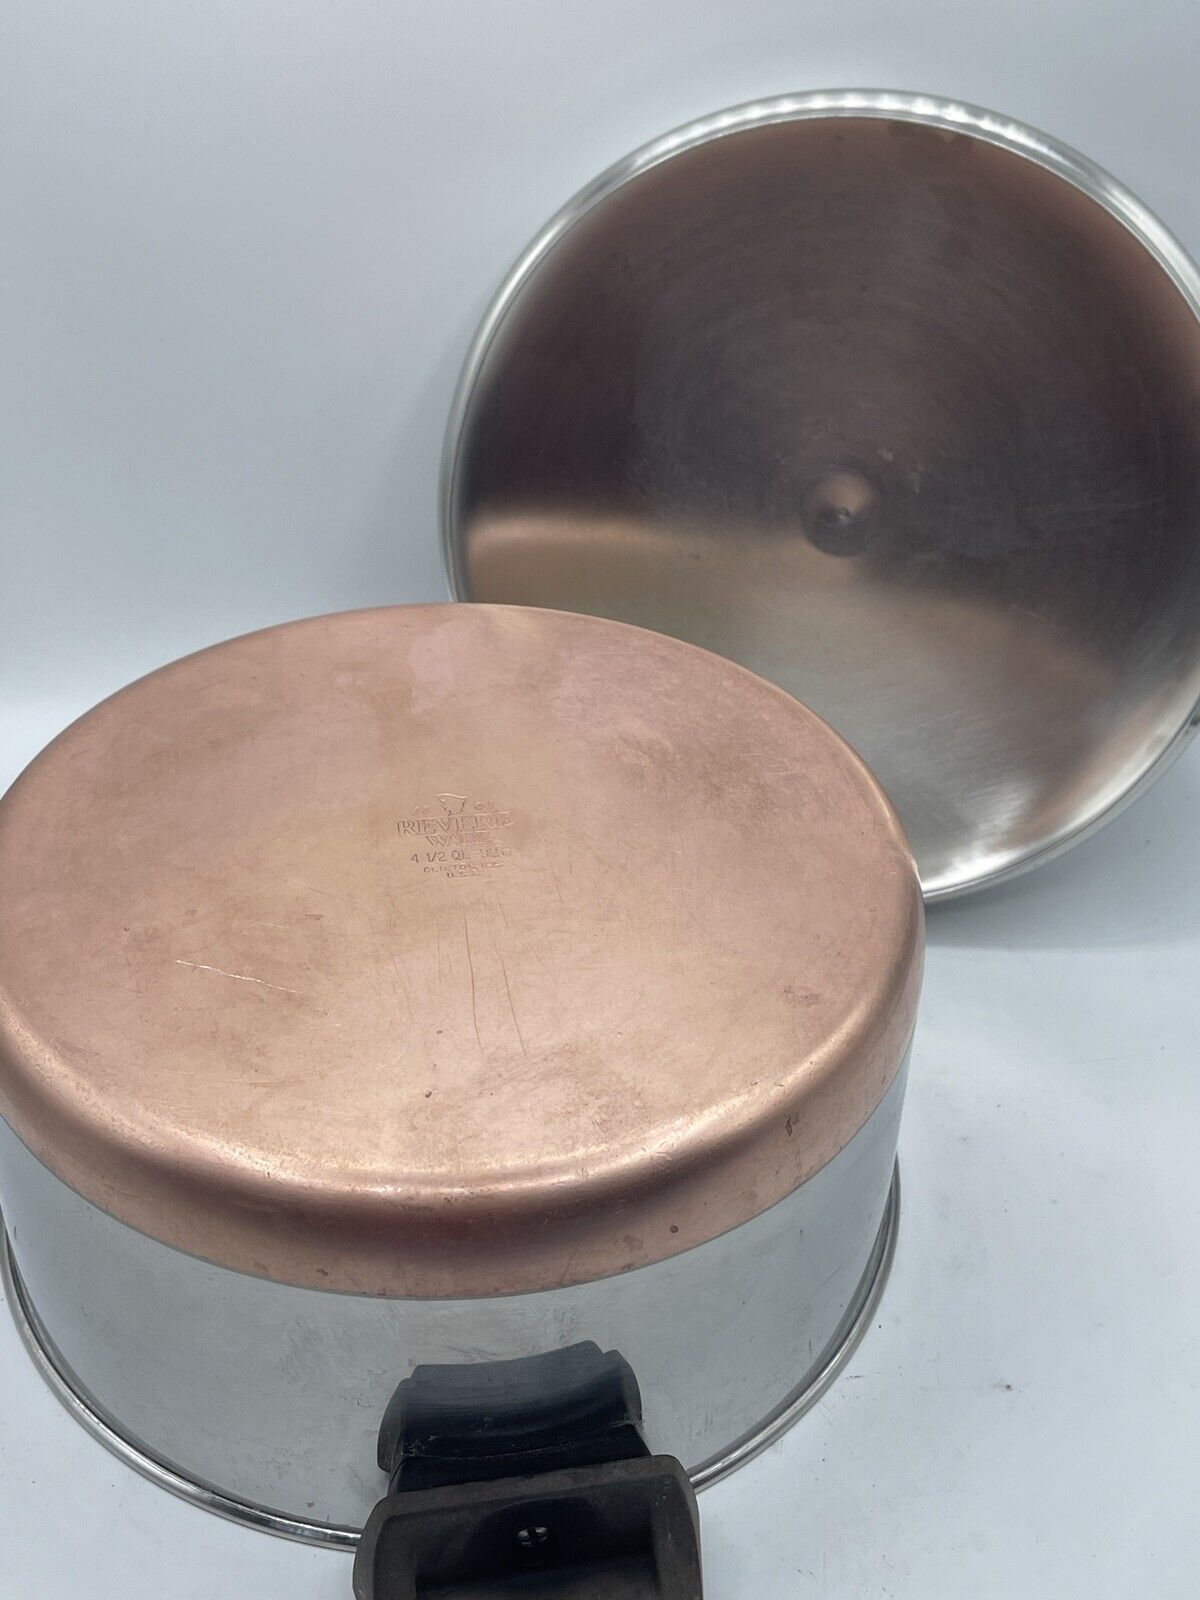 Revere Ware 4.5 Qt Pot with Lid Copper Bottom Pan 92e Clinton ILL USA 1801 USA